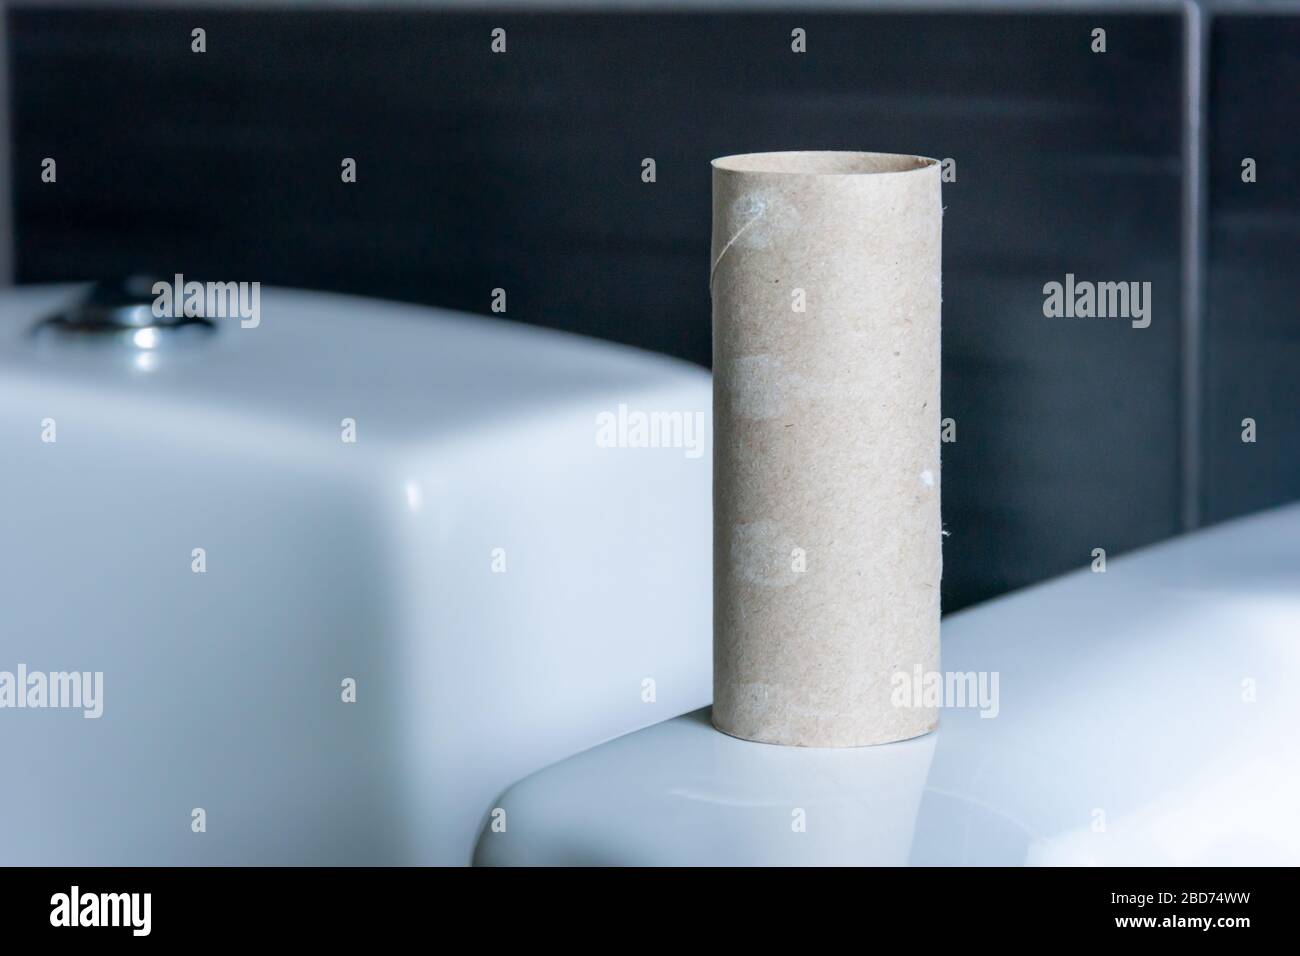 Rouleau de toilettes vide représentant l'impuissance et la crise, Suède Banque D'Images